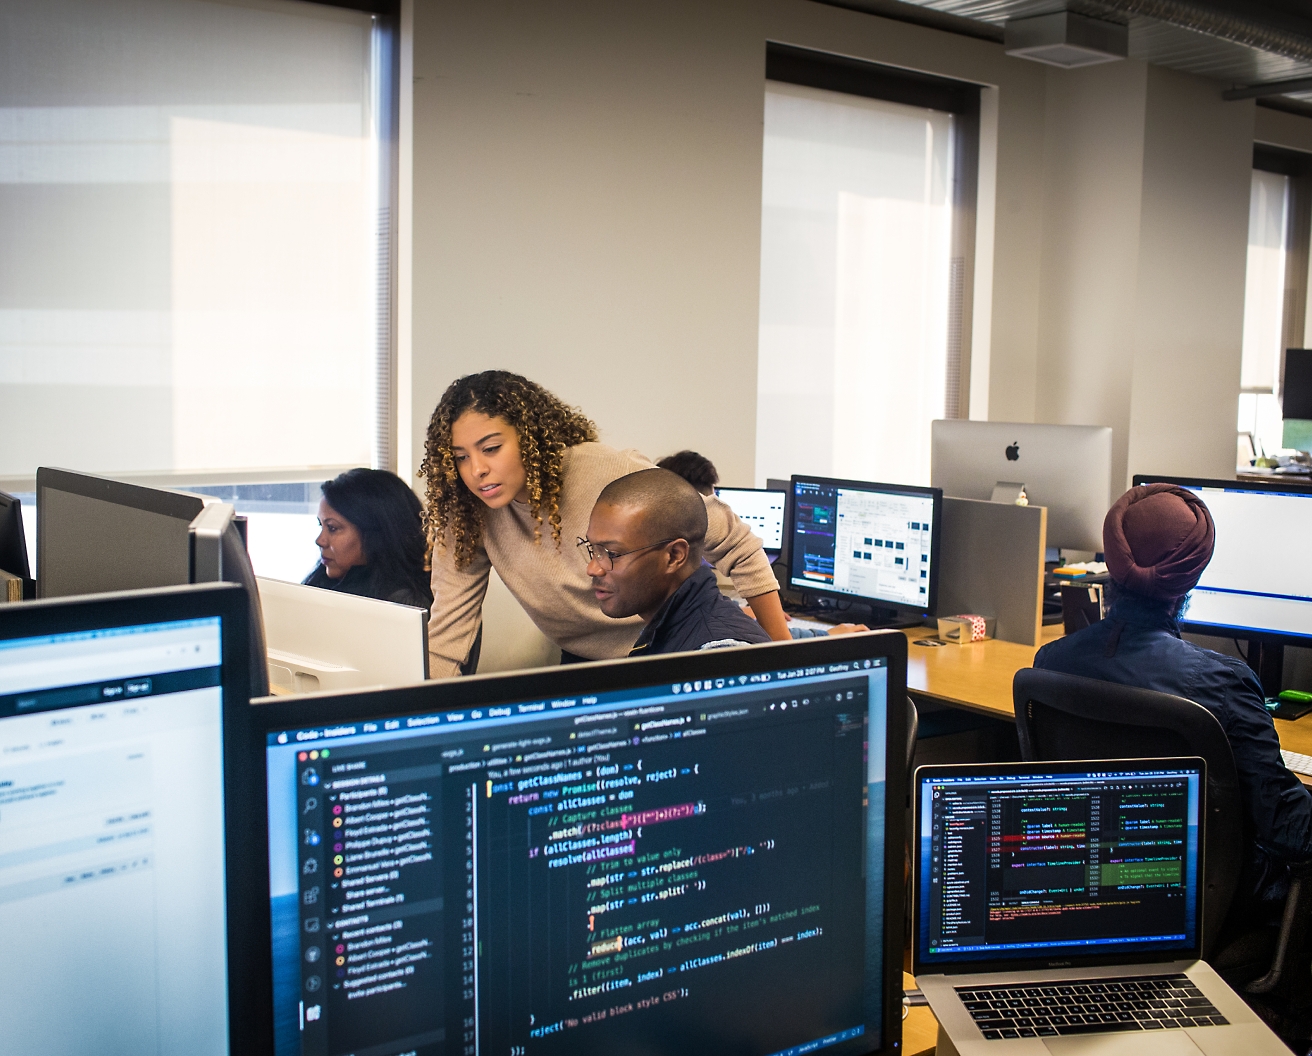 Bir ofis ortamında, çeşitli kodların ve verilerin göründüğü ekranlara odaklanmış şekilde bilgisayarlarda iş yapan, farklılıkları olan bir grup çalışan.